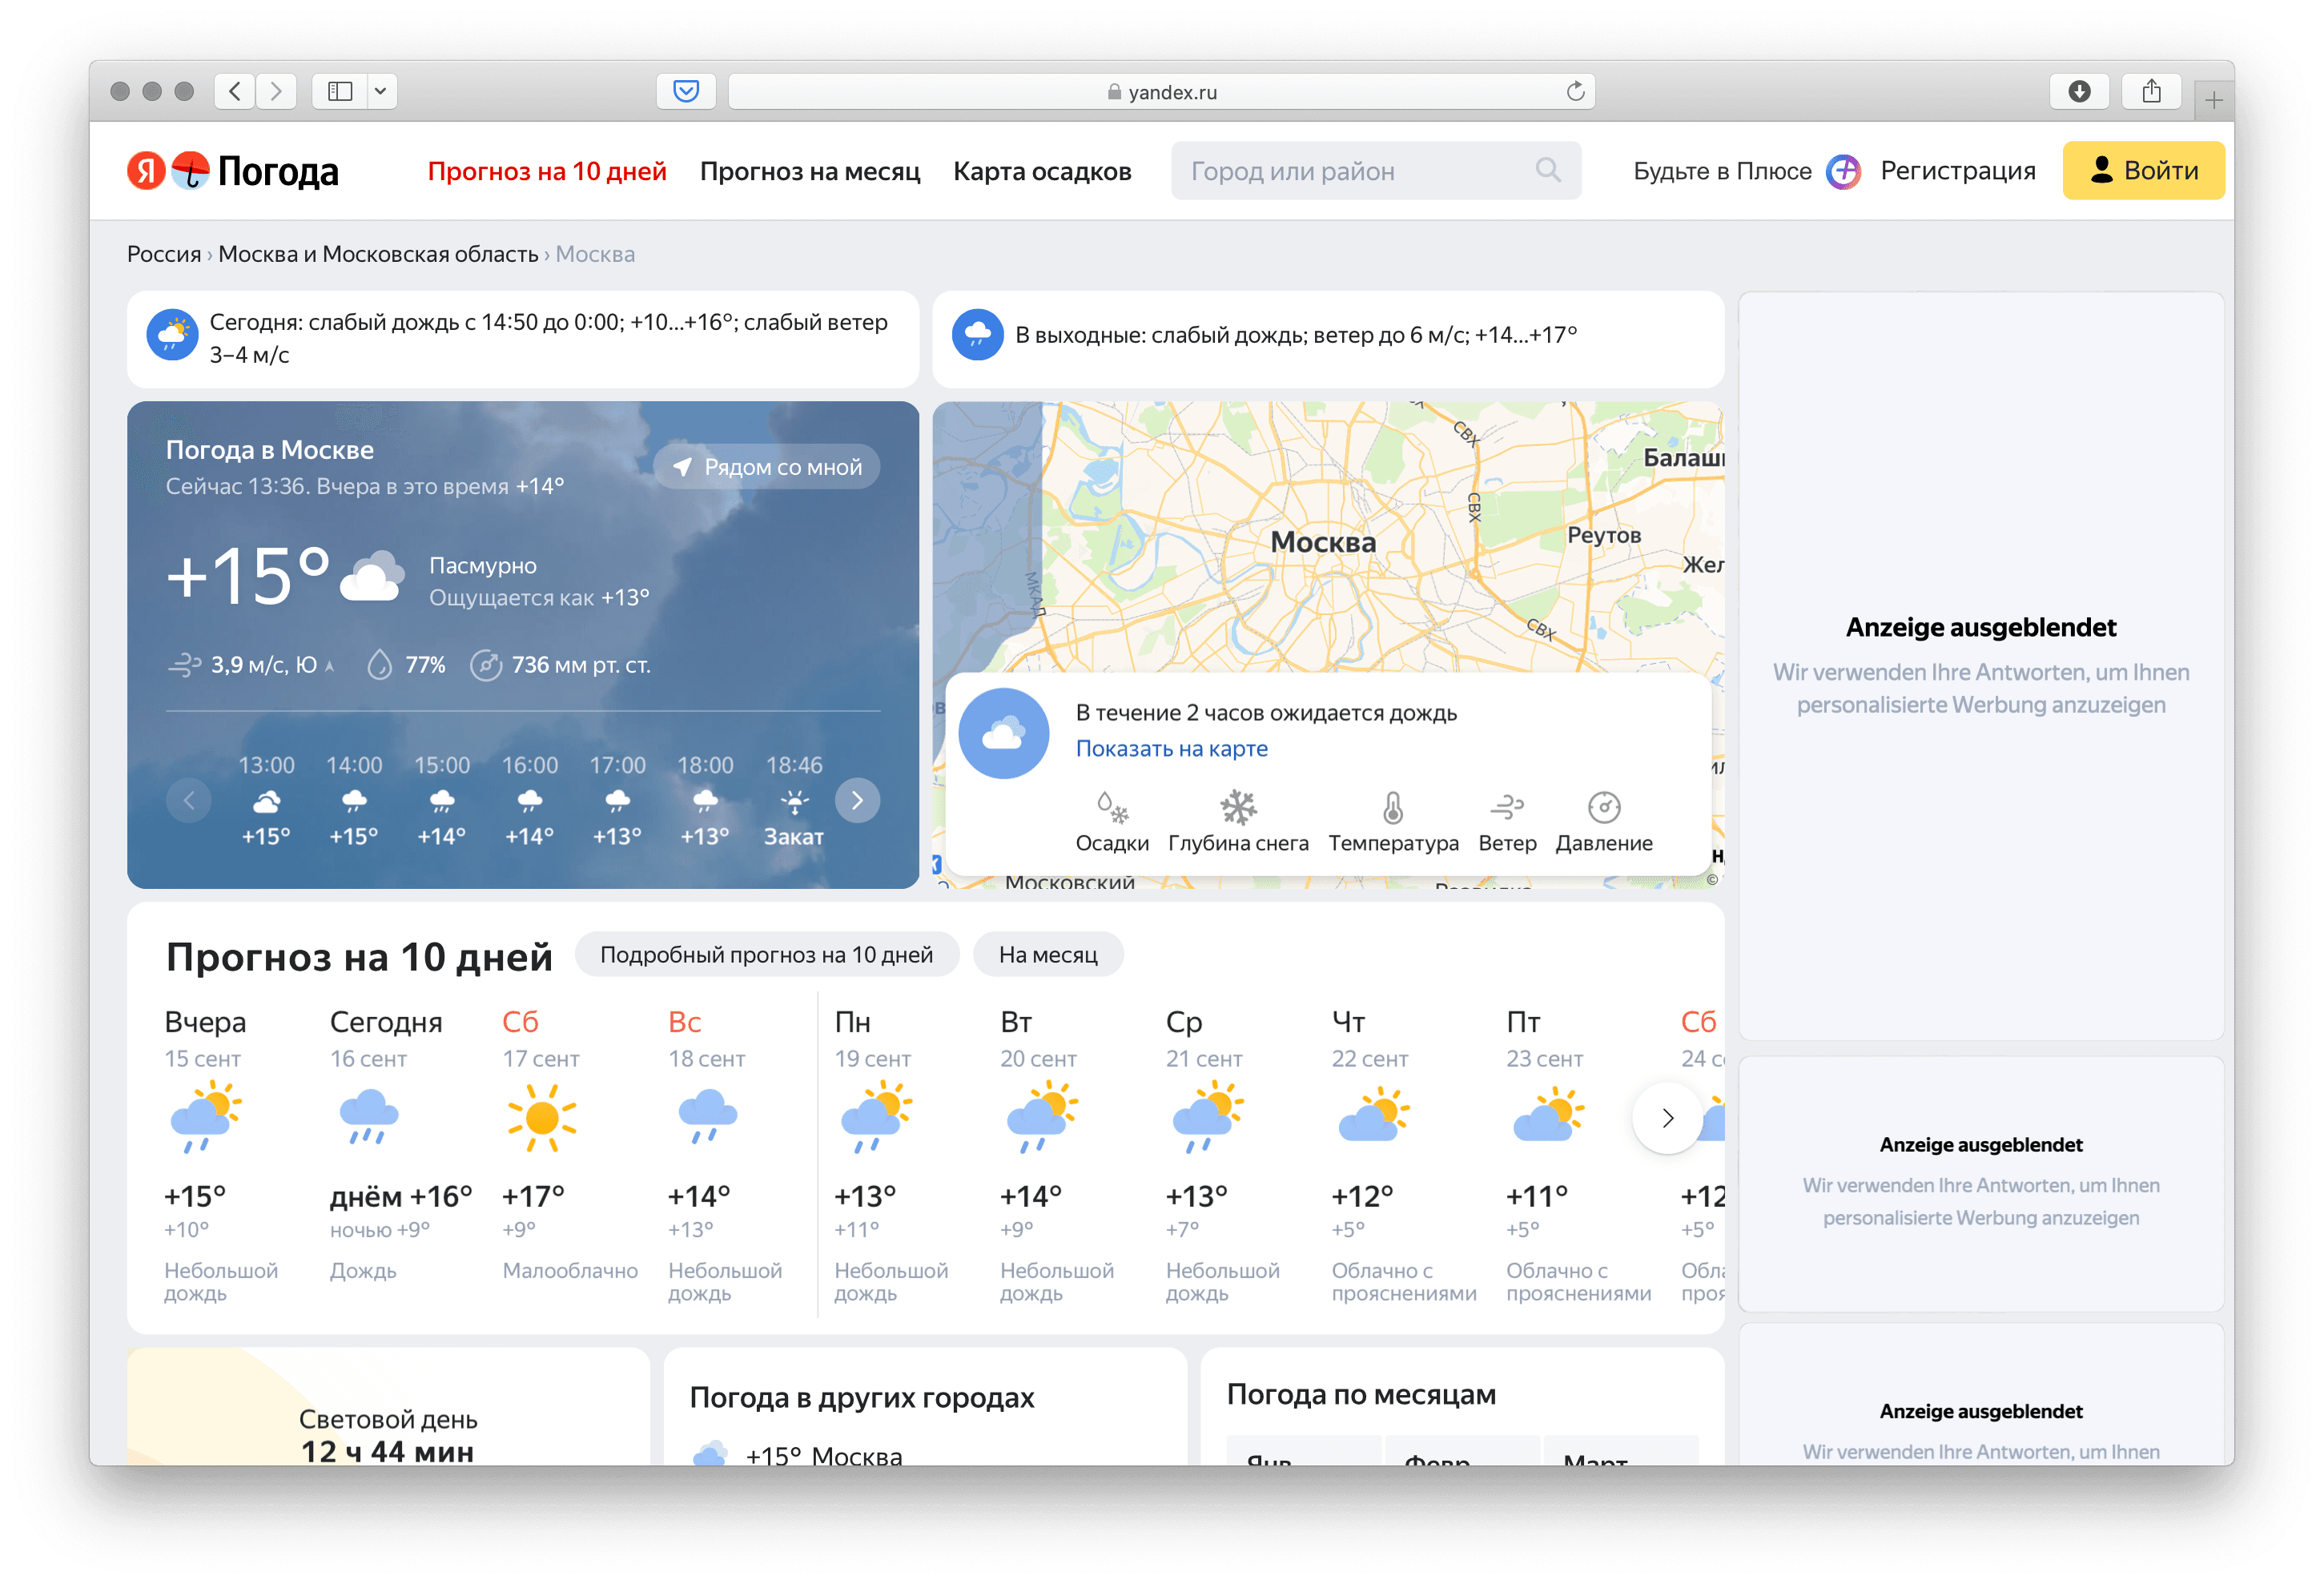 На сайте Яндекс Погода все ключевые изображения подписаны, поэтому скринридер легко может их озвучить 